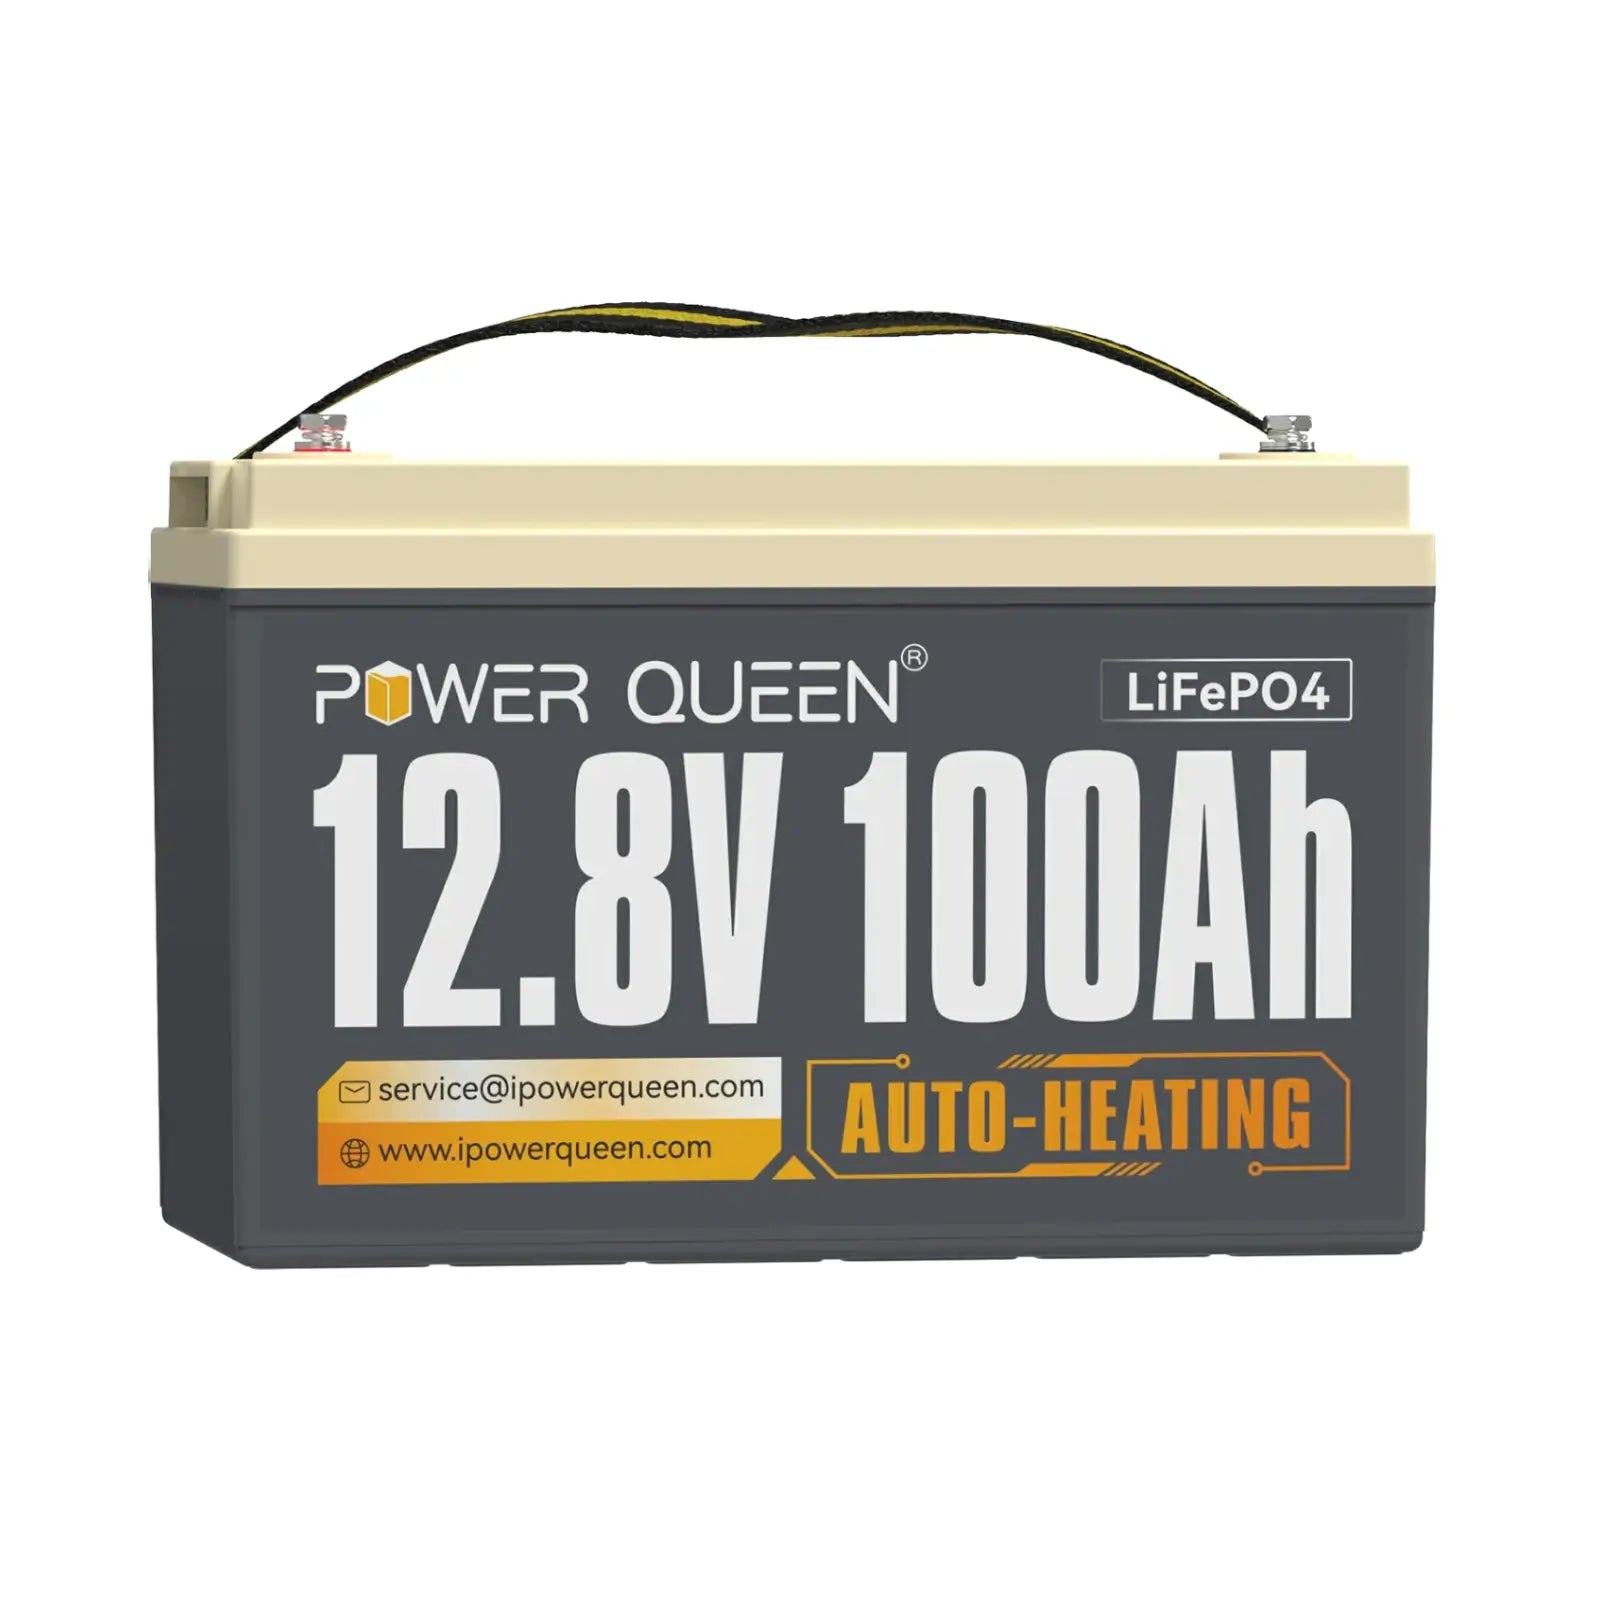 【0% IVA】Batería LiFePO4 autocalentable Power Queen de 12 V y 100 Ah, BMS integrado de 100 A